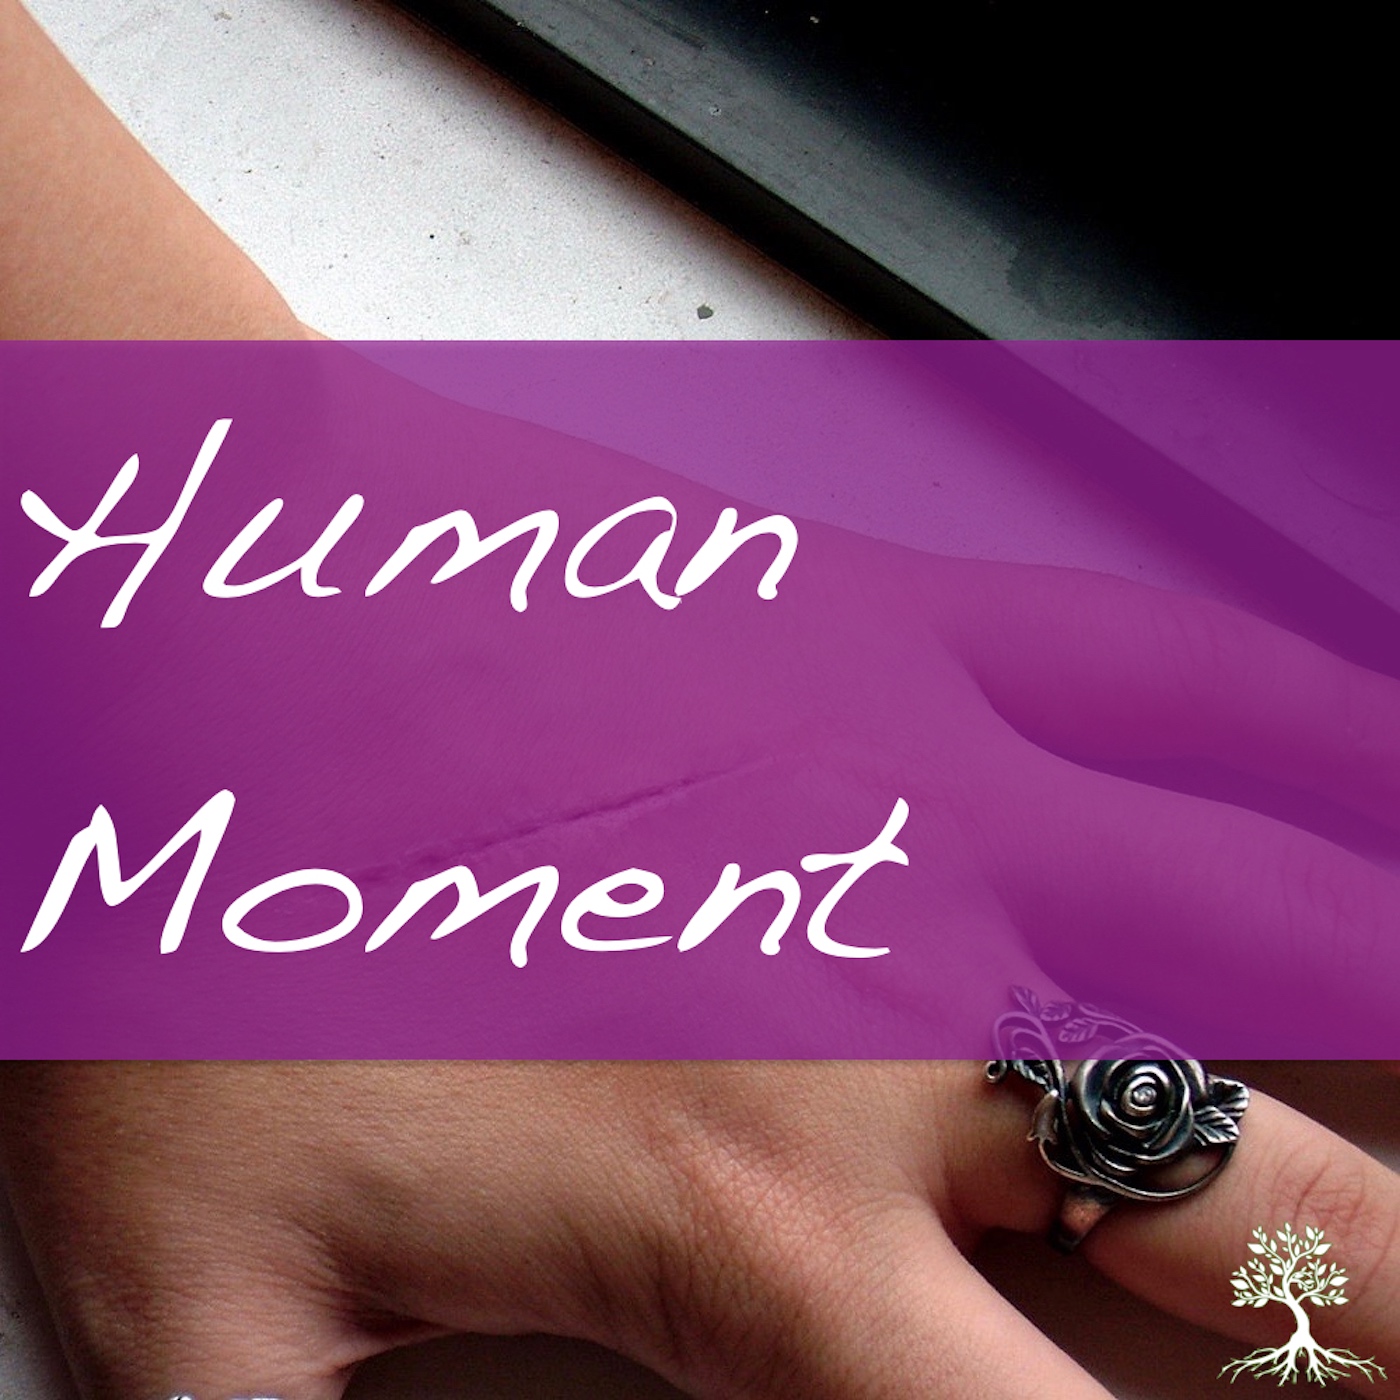 Human Moment (Natalia Terfa 4/15/18)